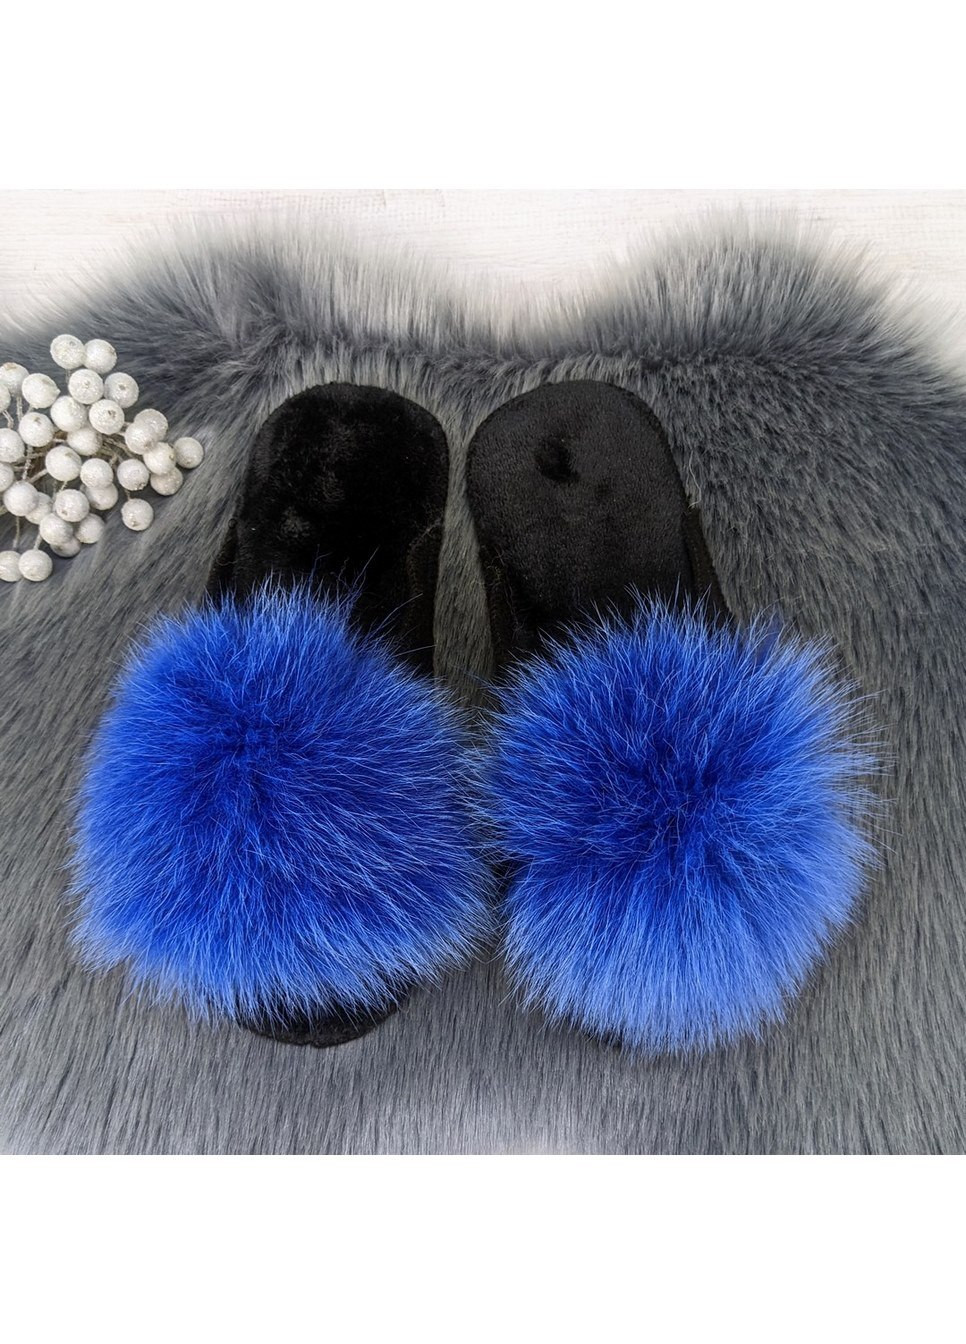 Синие тапочки женские войлочные для ламината с натуральным мехом Slippers с помпонами